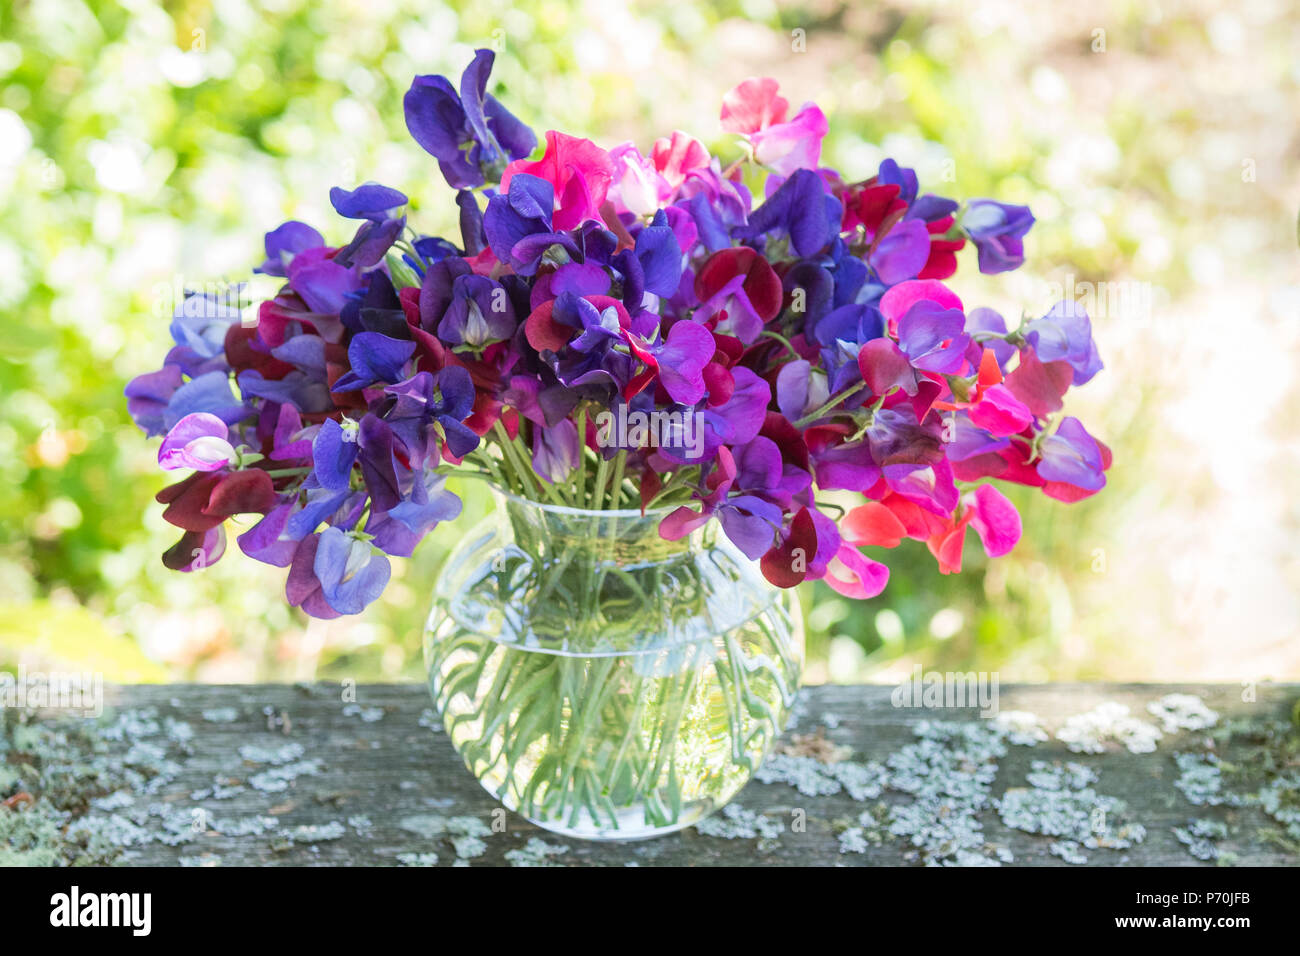 Piselli dolci - mazzetto di rosa e viola i piselli dolci in vaso di vetro sul tavolo da giardino Foto Stock